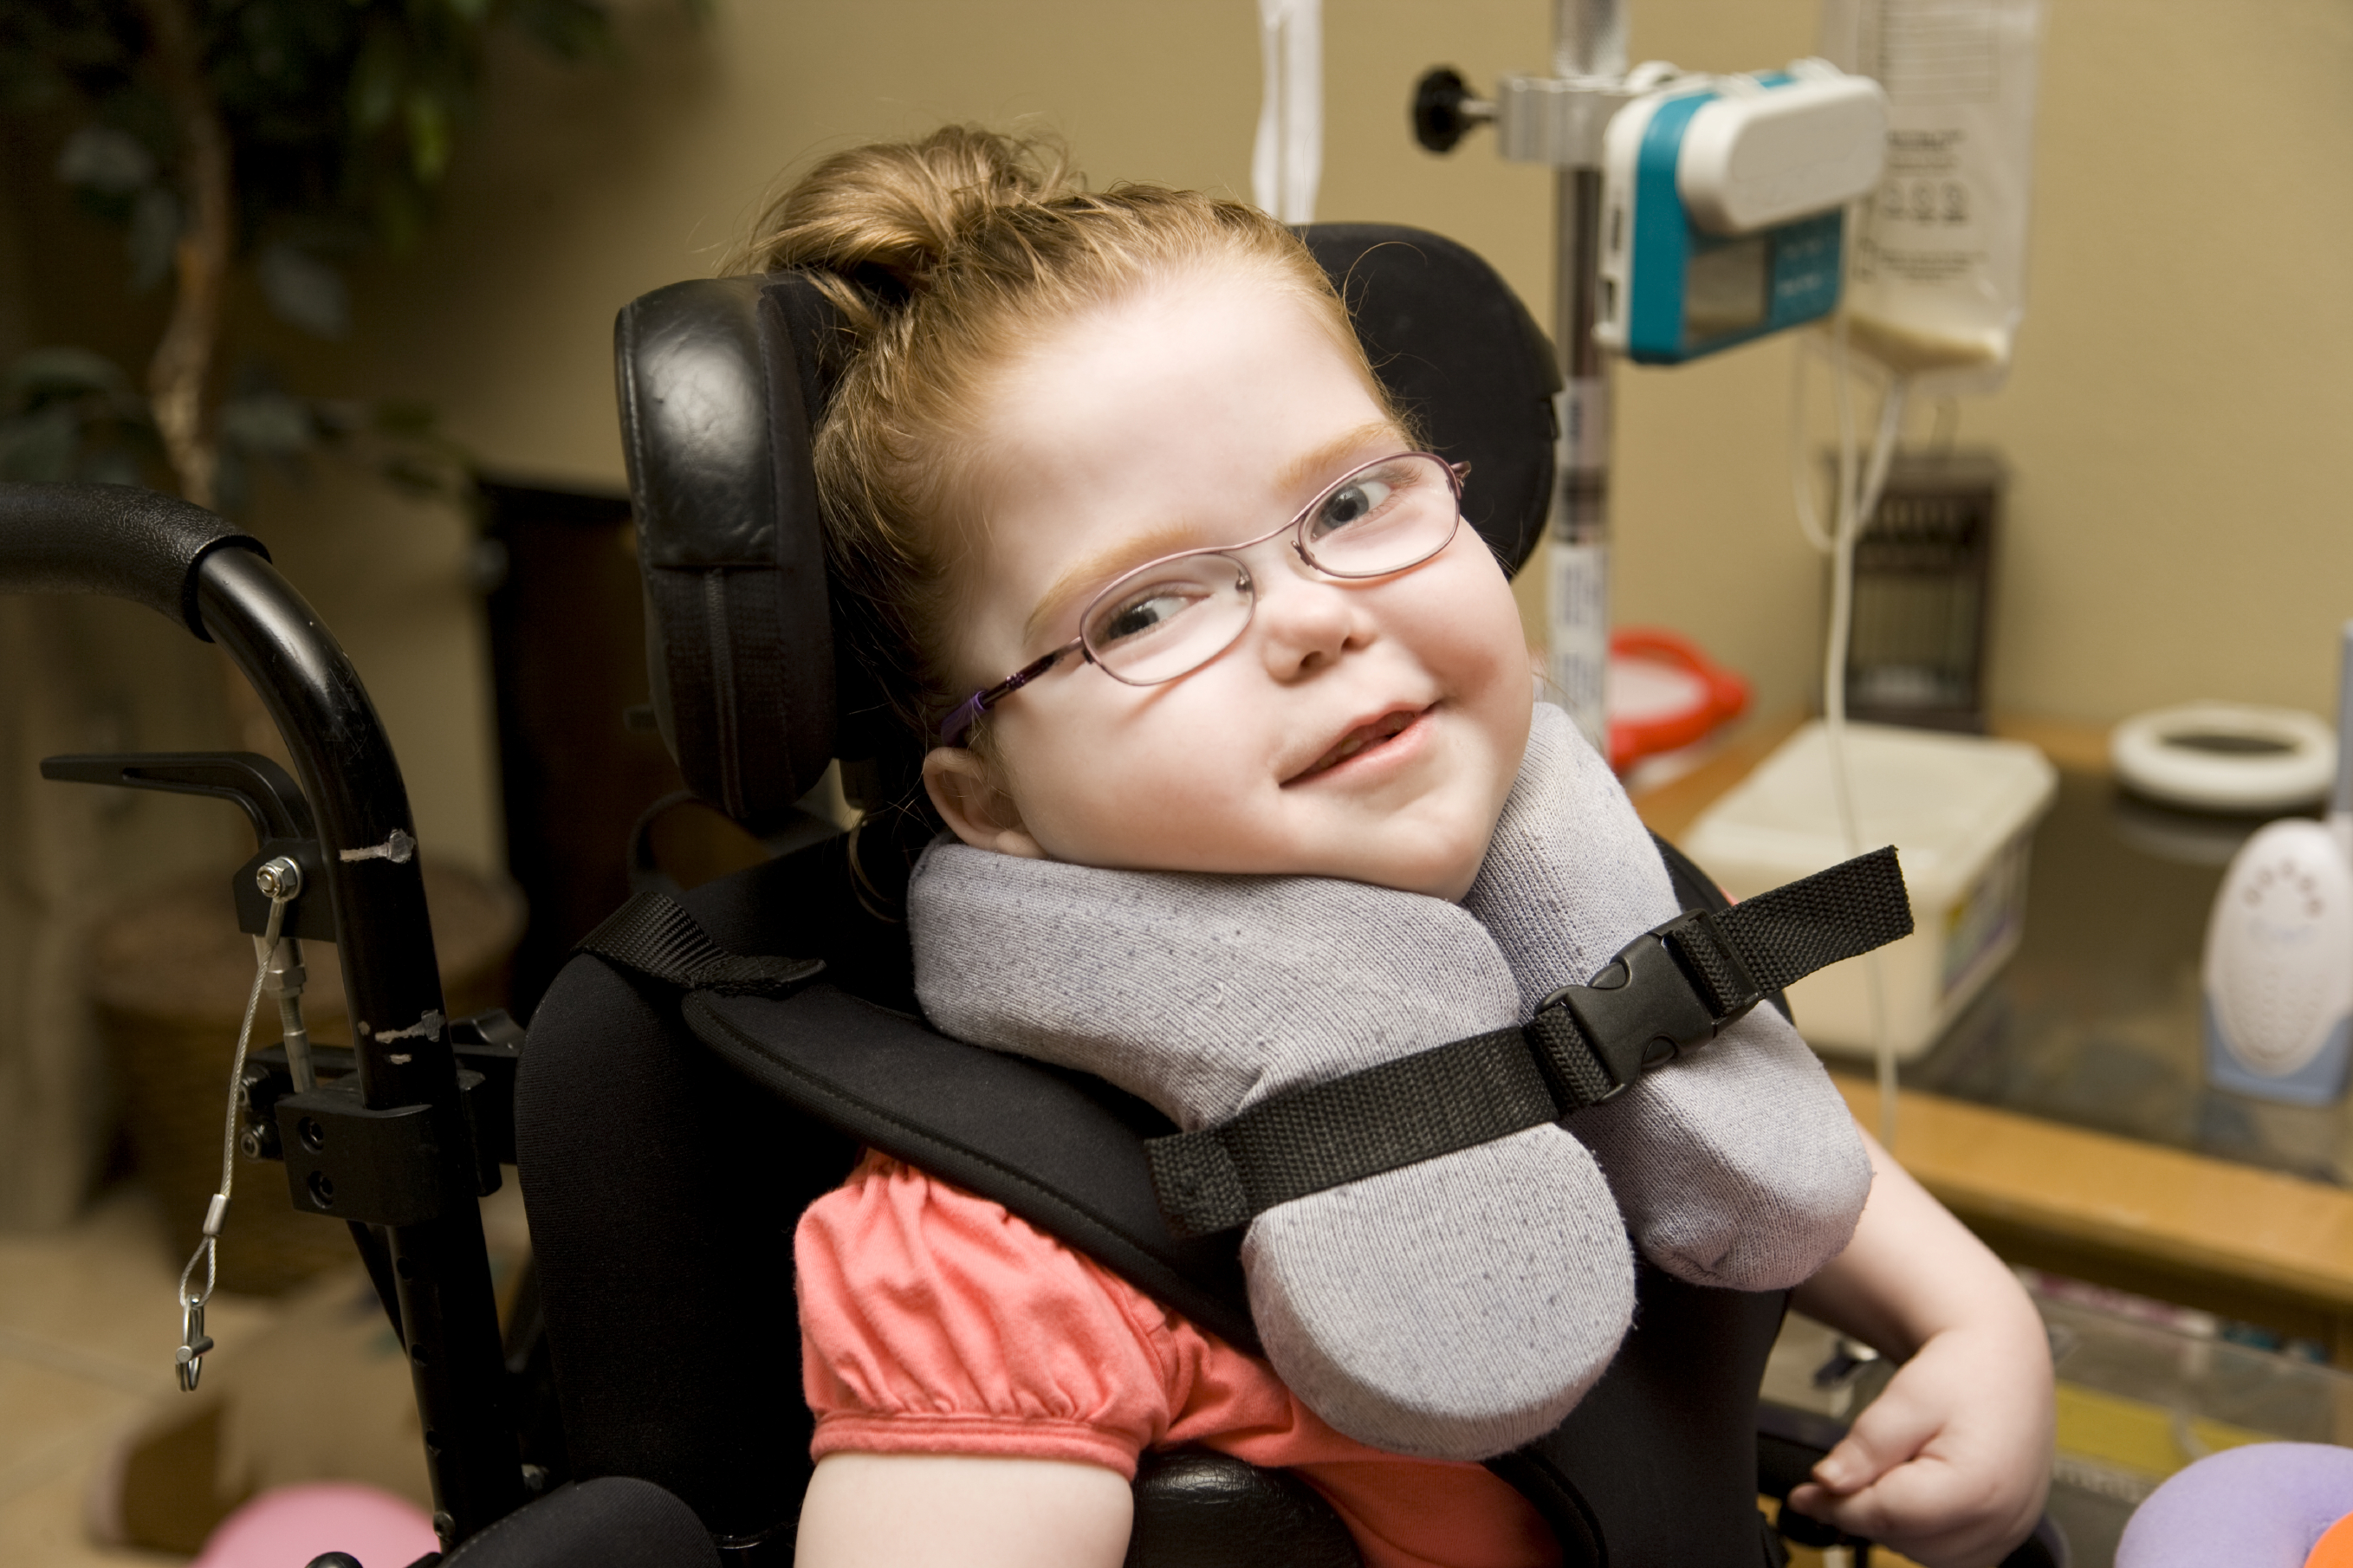 Flicka med funktionsnedsättning som sitter i rullstol